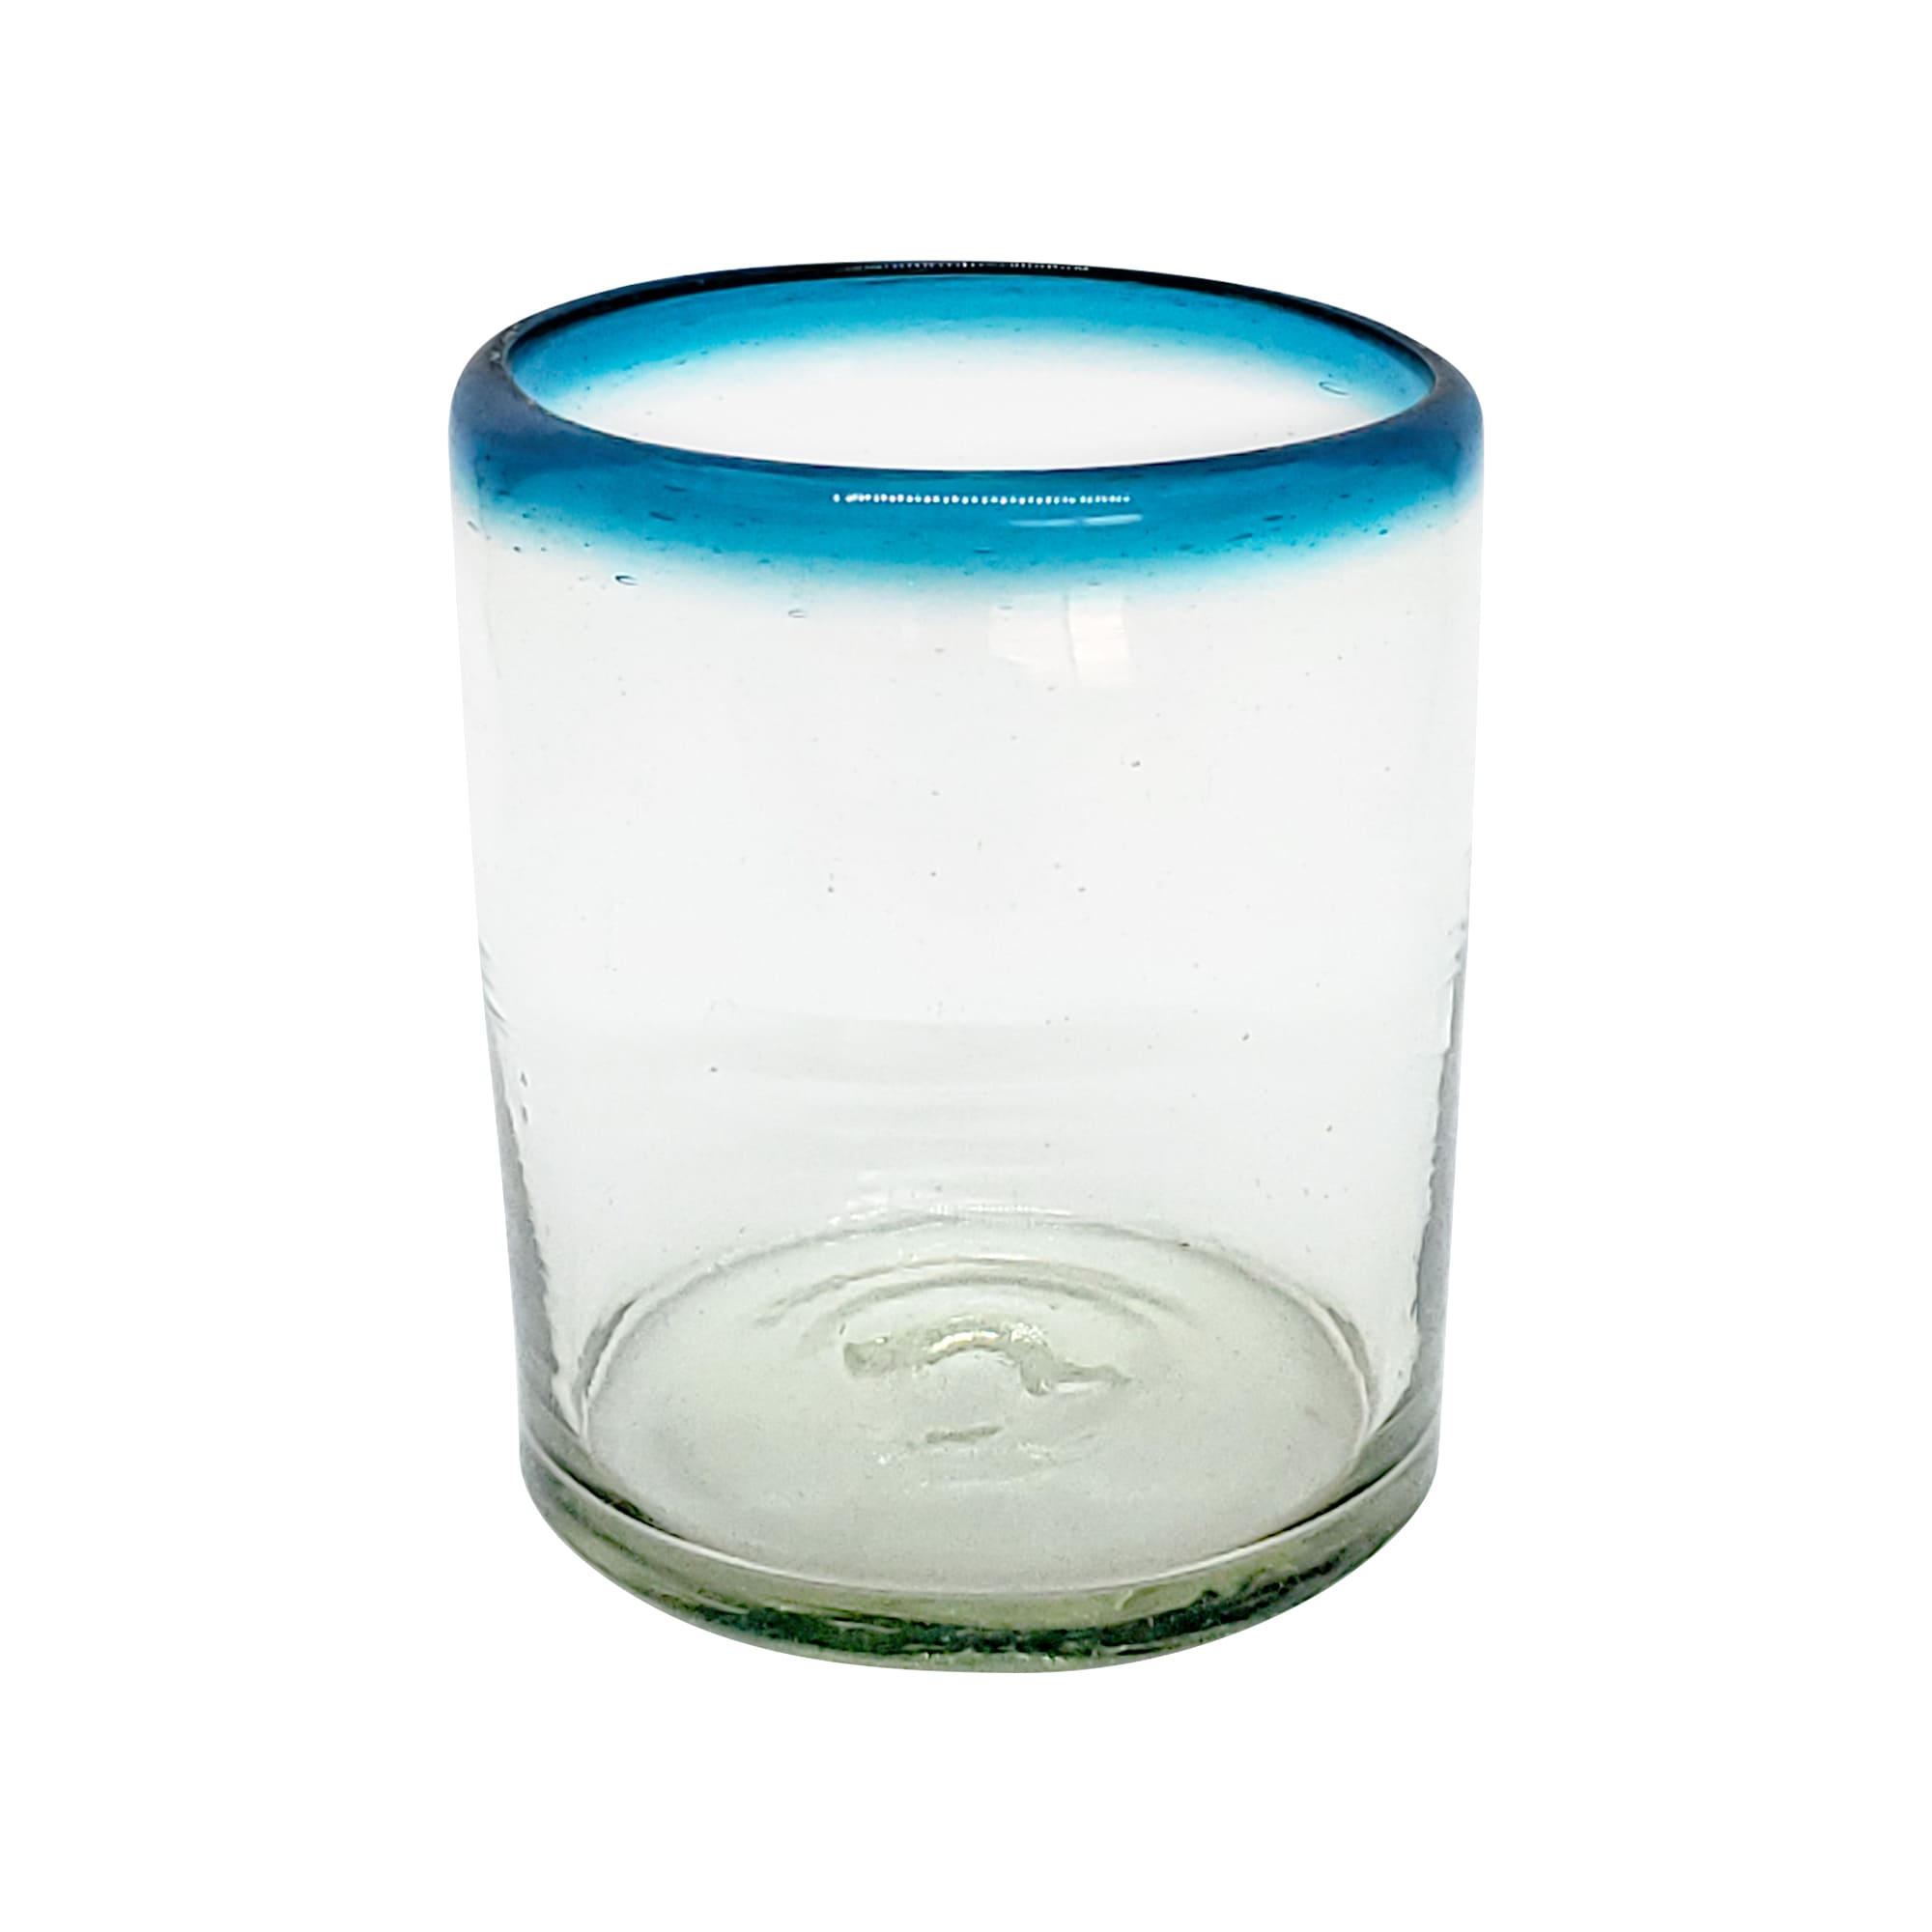 VIDRIO SOPLADO / Juego de 6 vasos chicos con borde azul aqua